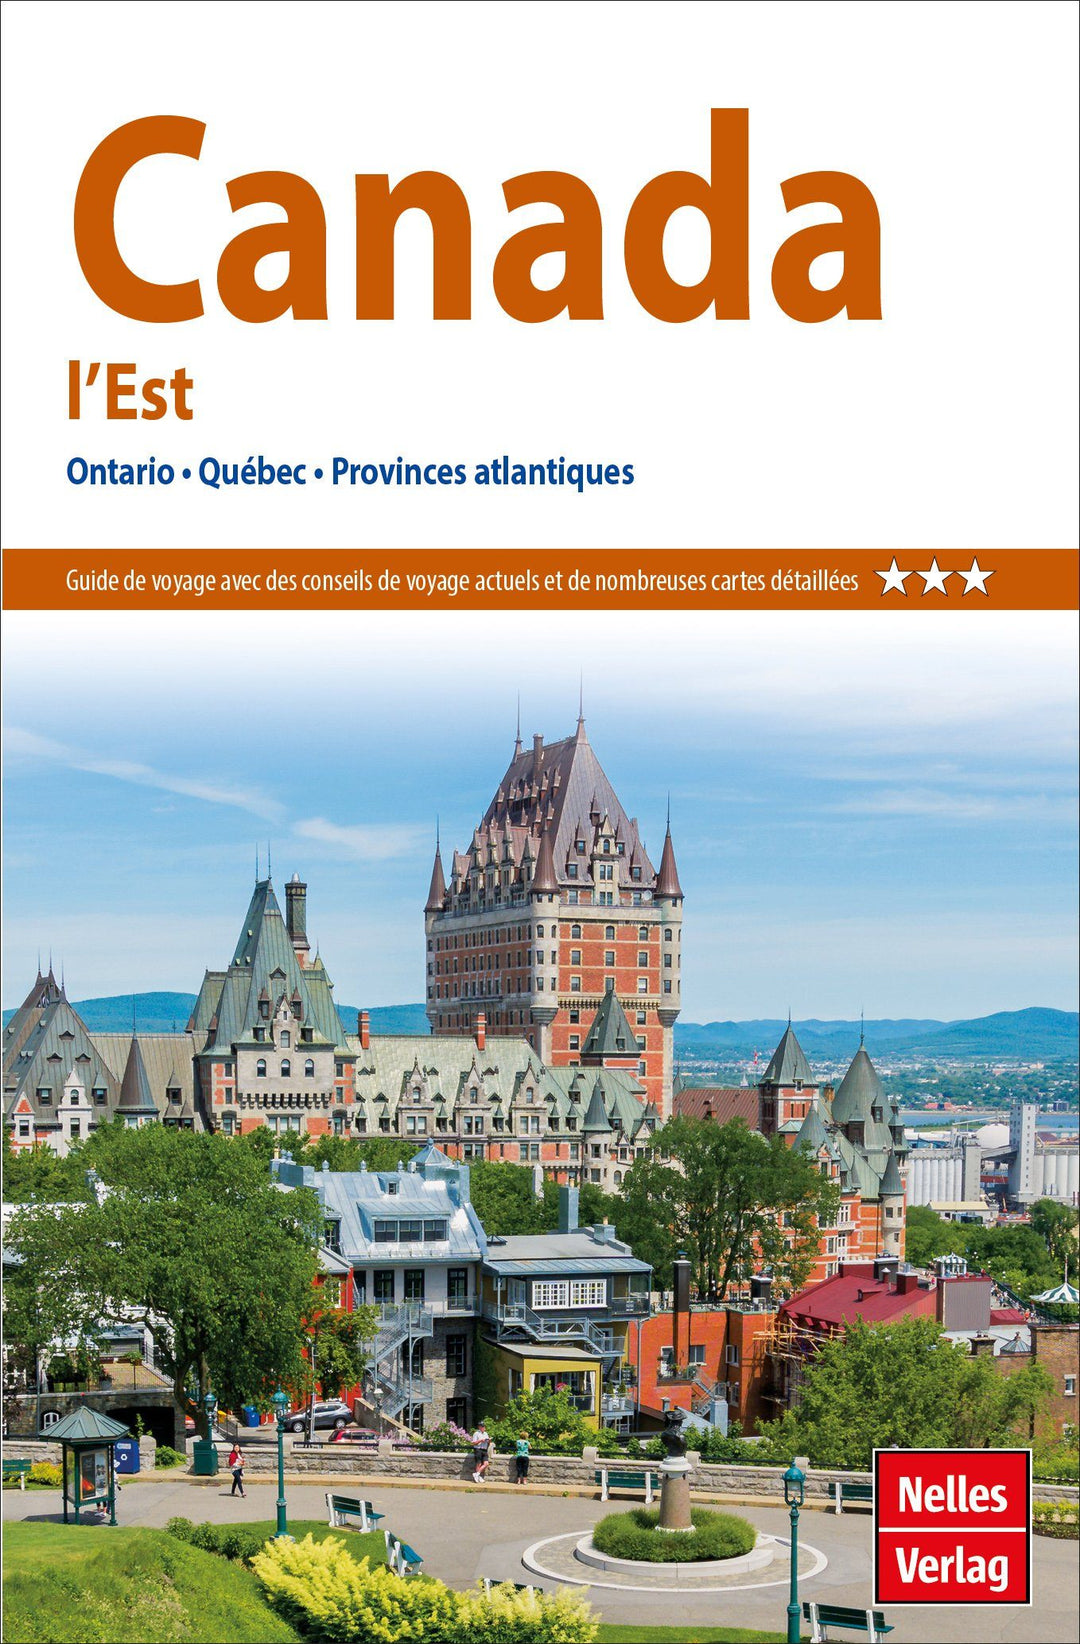 Guide de voyage - Canada Est (Ontario, Québec, Provinces Atlantiques) | Nelles Guide guide de voyage Nelles Guide 